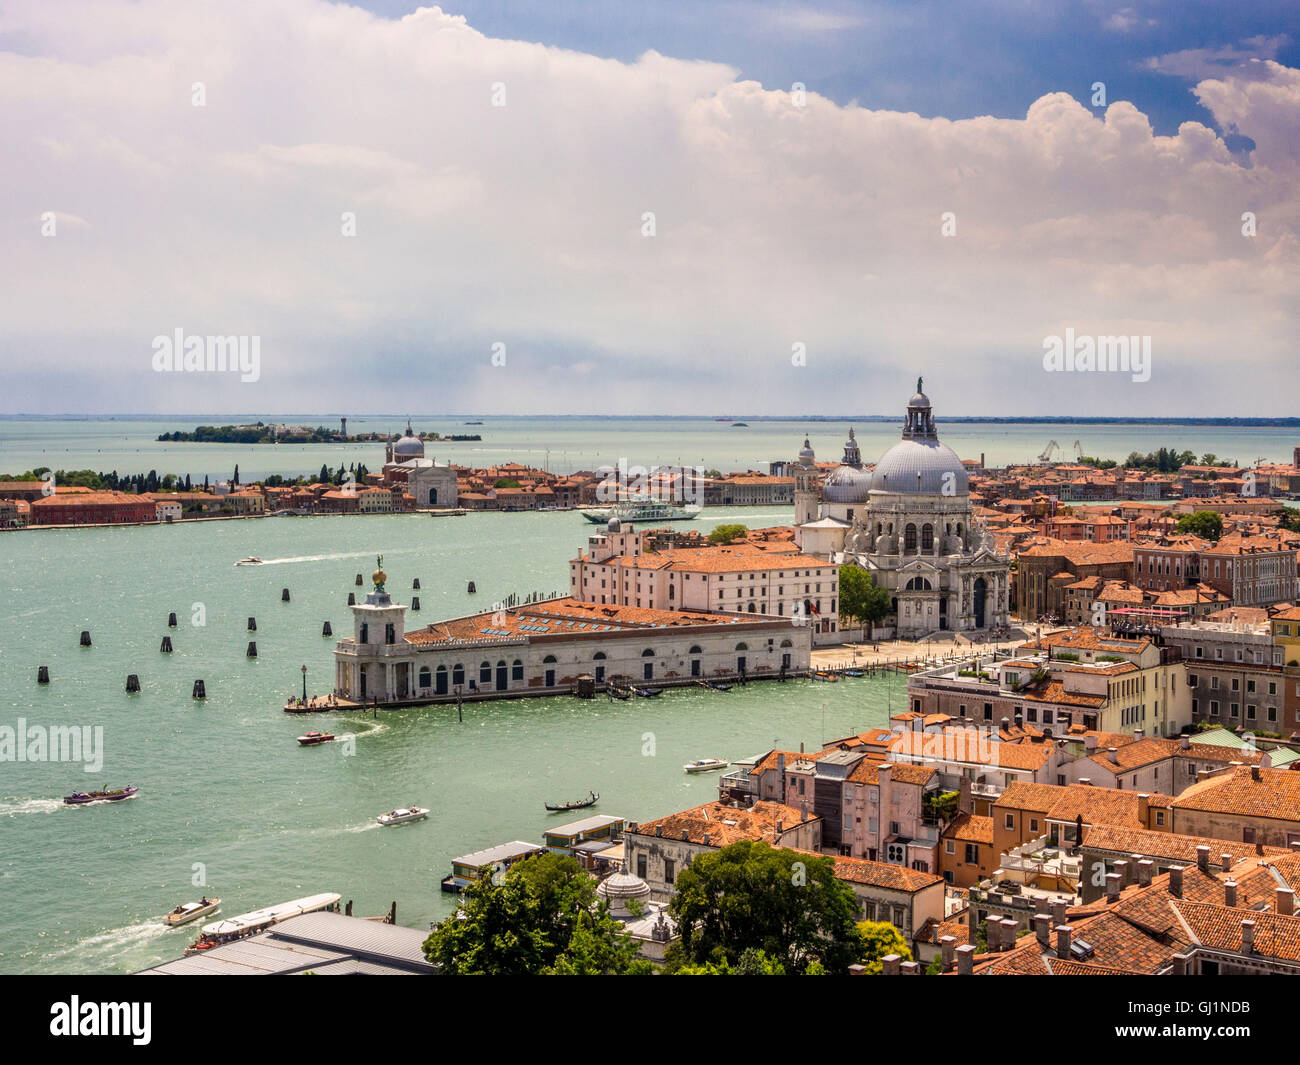 Vue aérienne de la Punta della Dogana et l'église de Santa Maria della Salute, avec Grand Canal au premier plan. Venise, Italie. Banque D'Images